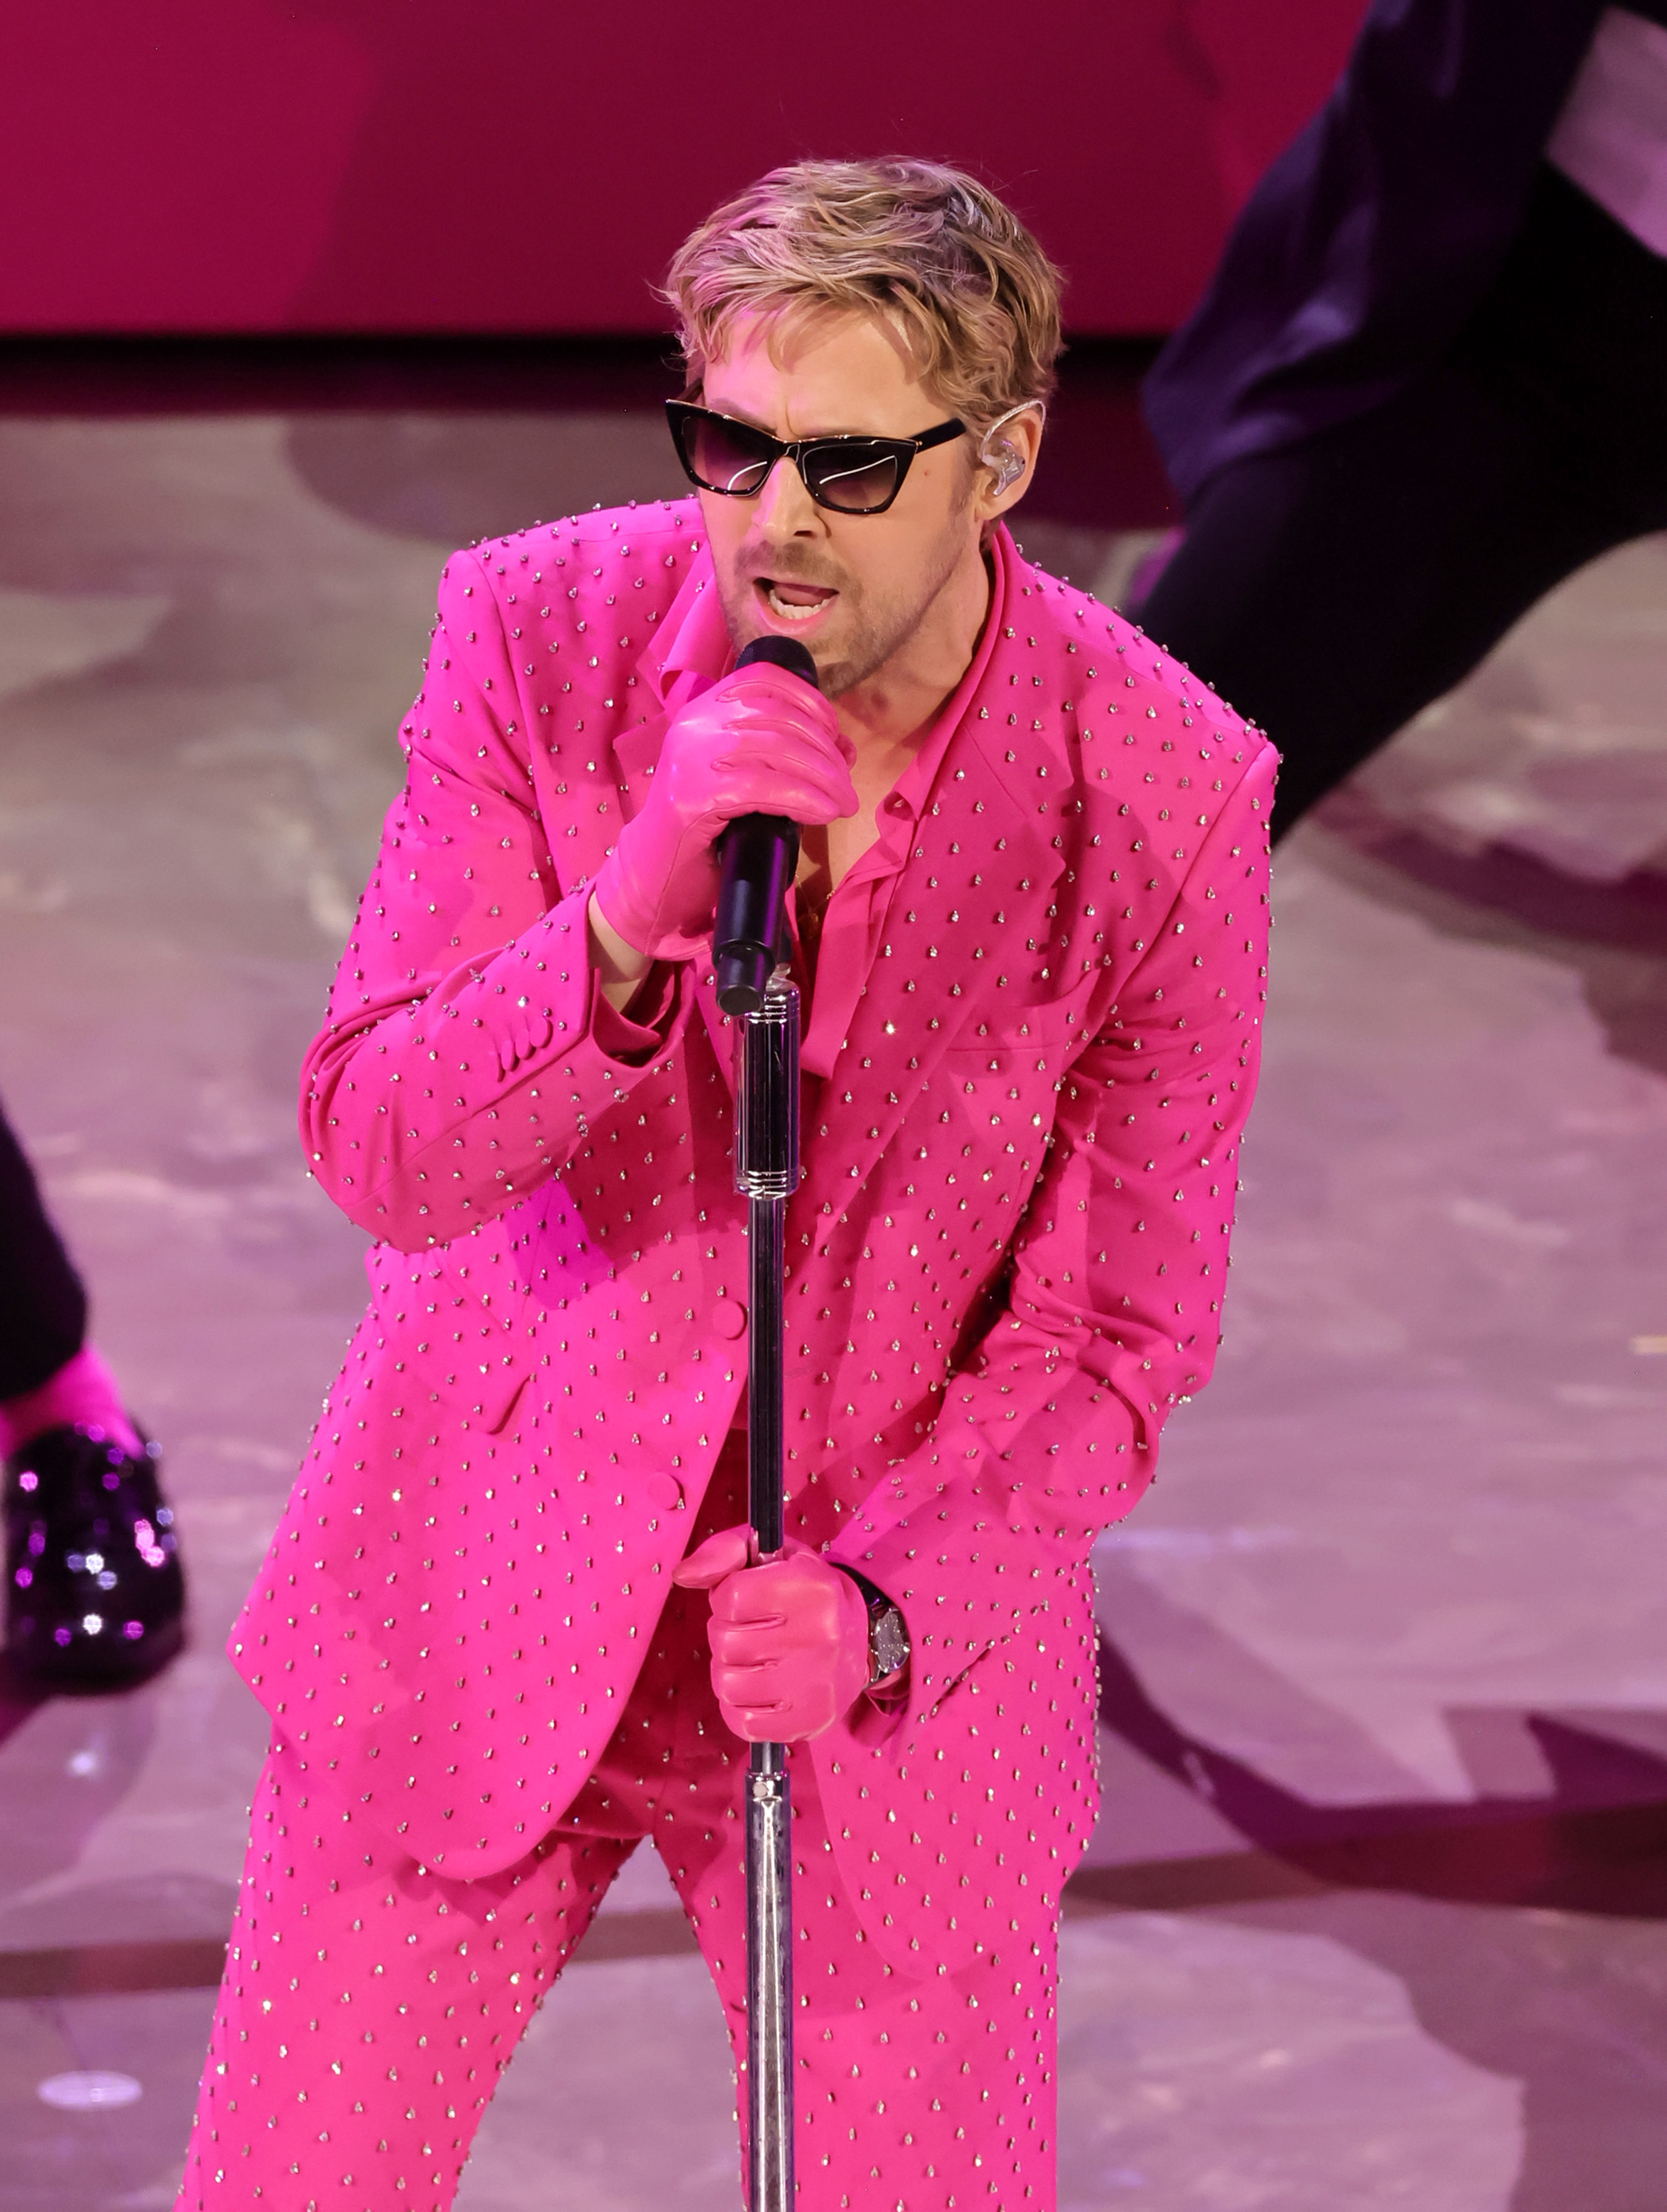 Ryan Gosling interprète "I'm Just Ken" de "Barbie" sur scène lors de la 96e cérémonie annuelle des Oscars le 10 mars 2024 à Hollywood, Californie | Source : Getty Images